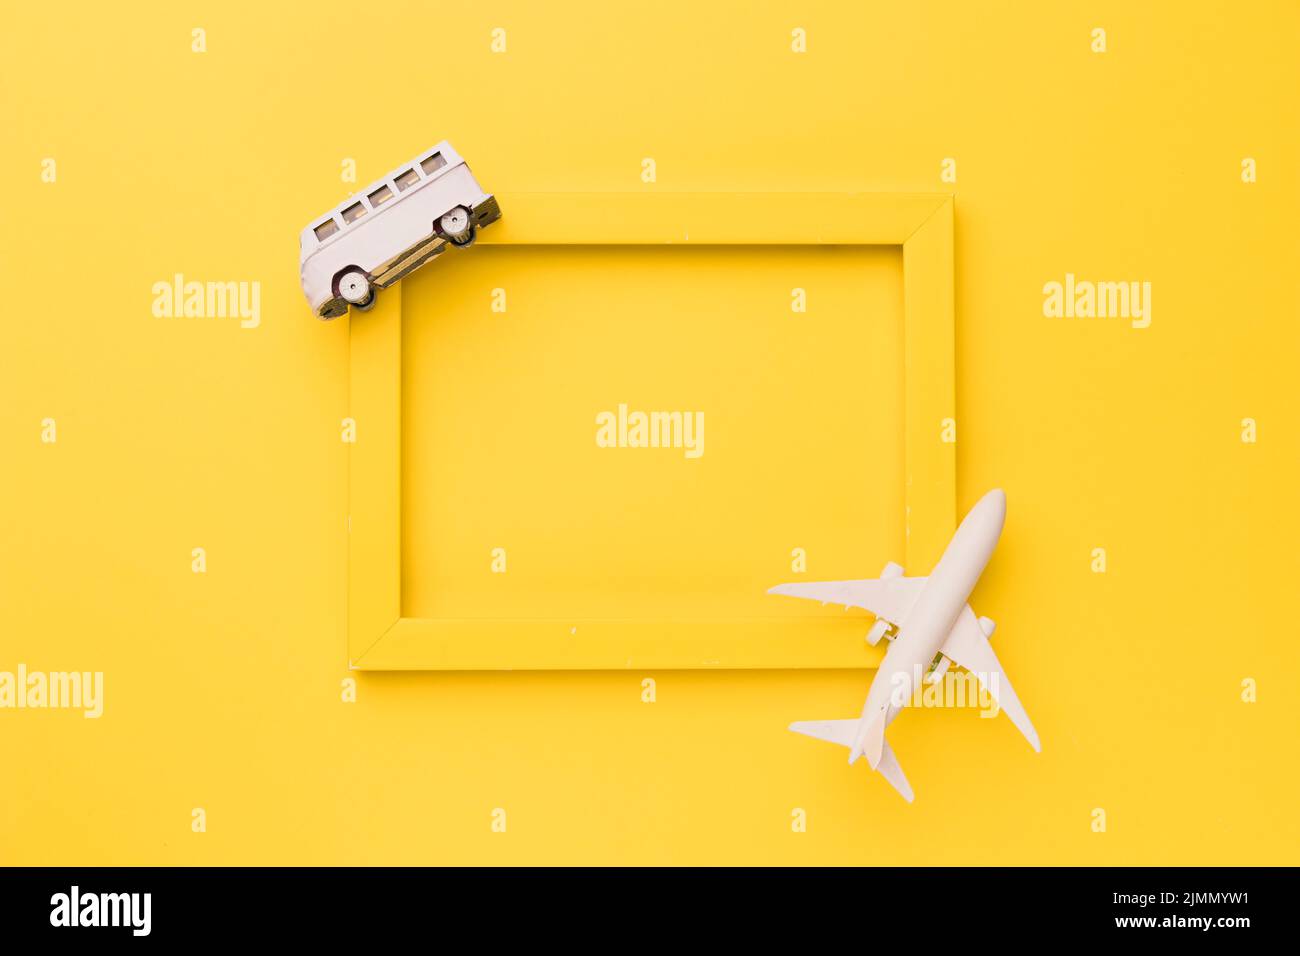 Composizione giocattolo aereo bus telaio giallo Foto Stock